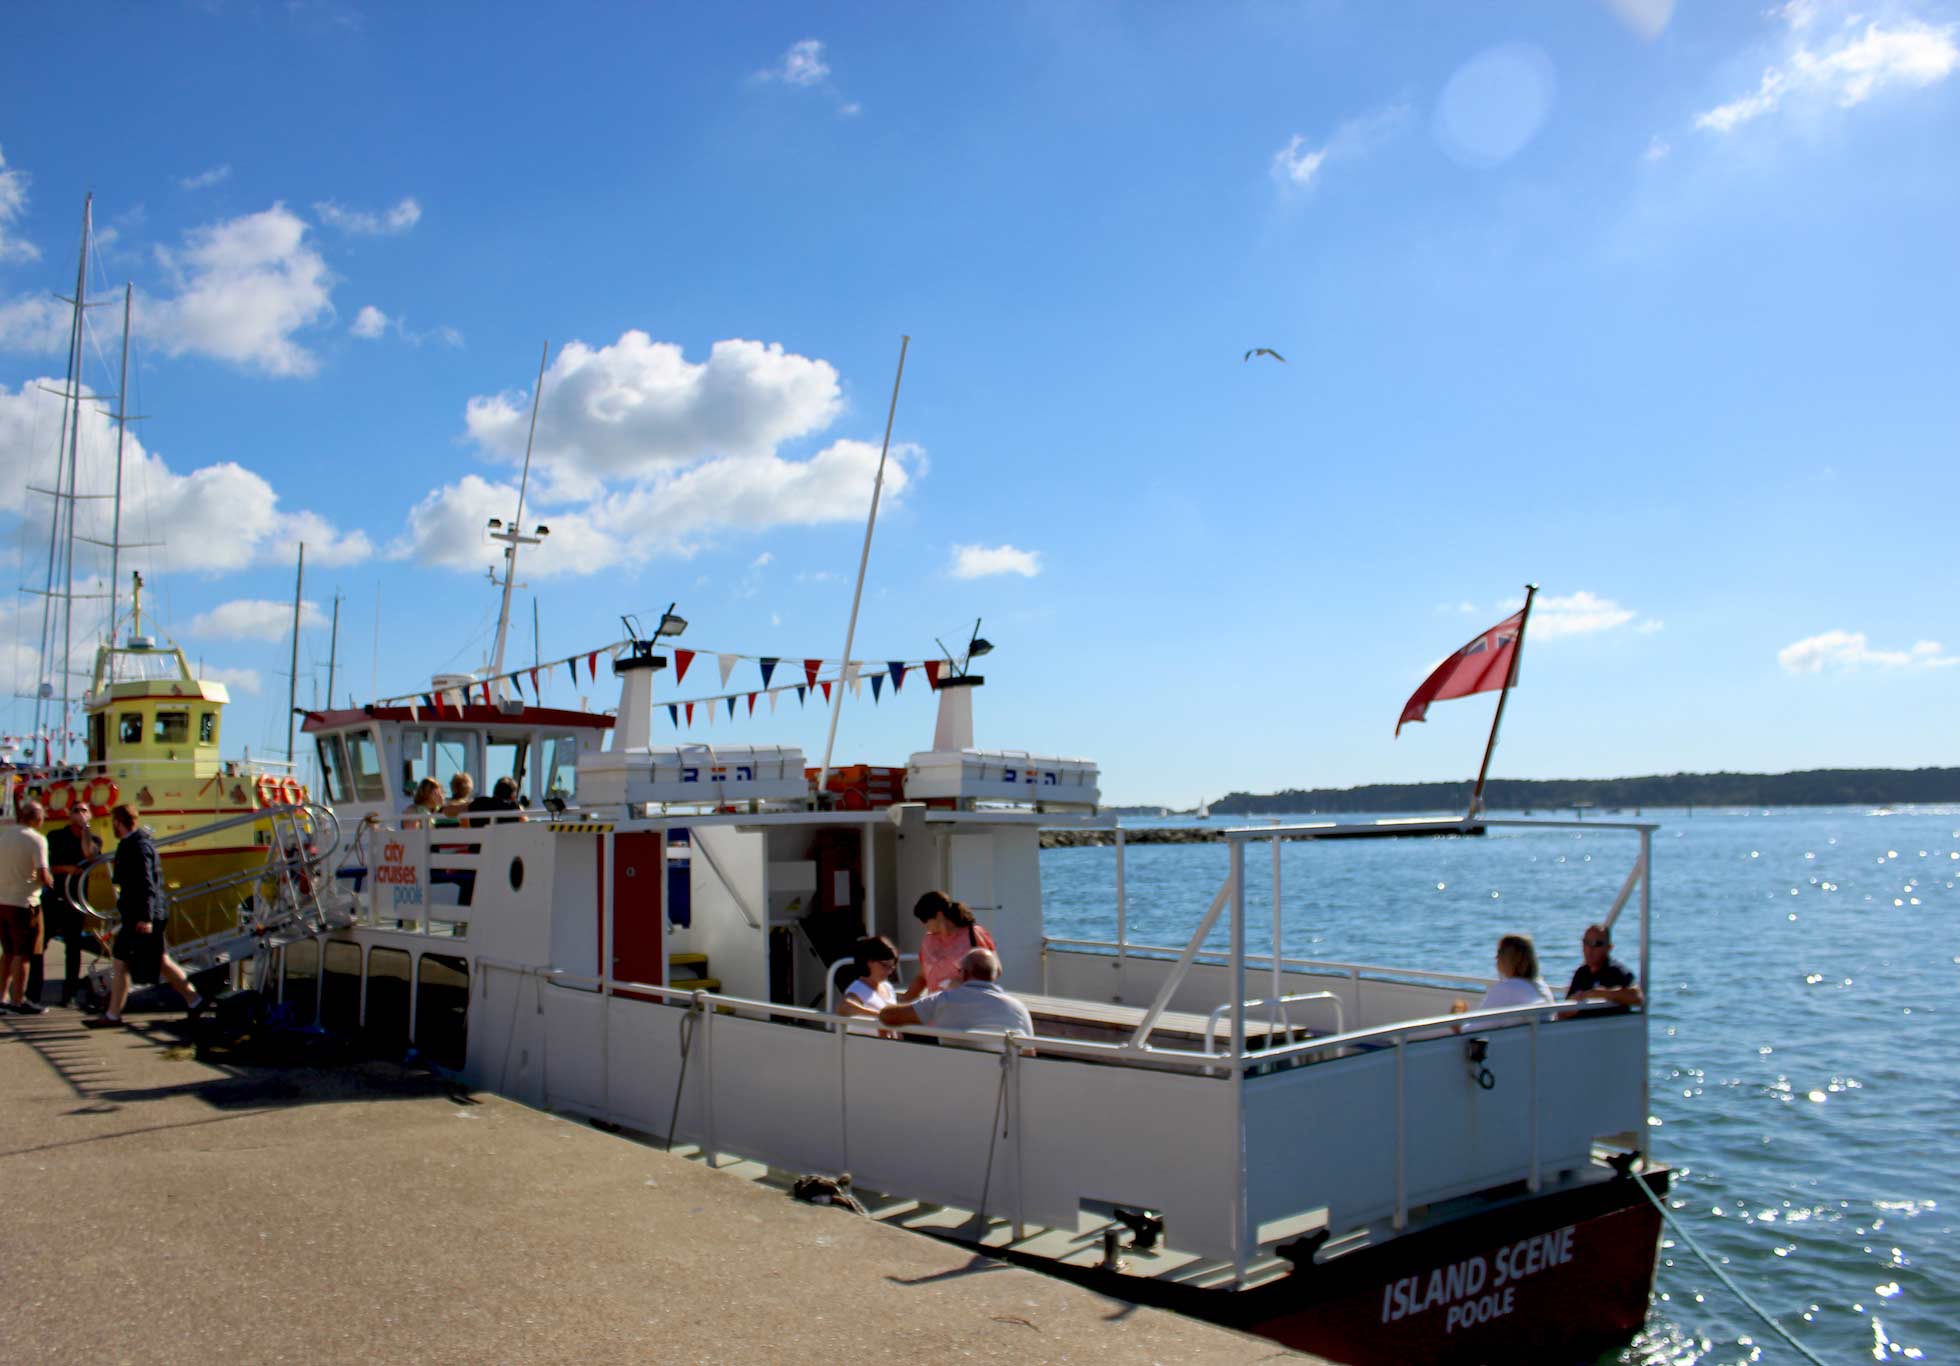 Island Scene una piccola barca attraccata a Poole con persone sedute sul ponte.